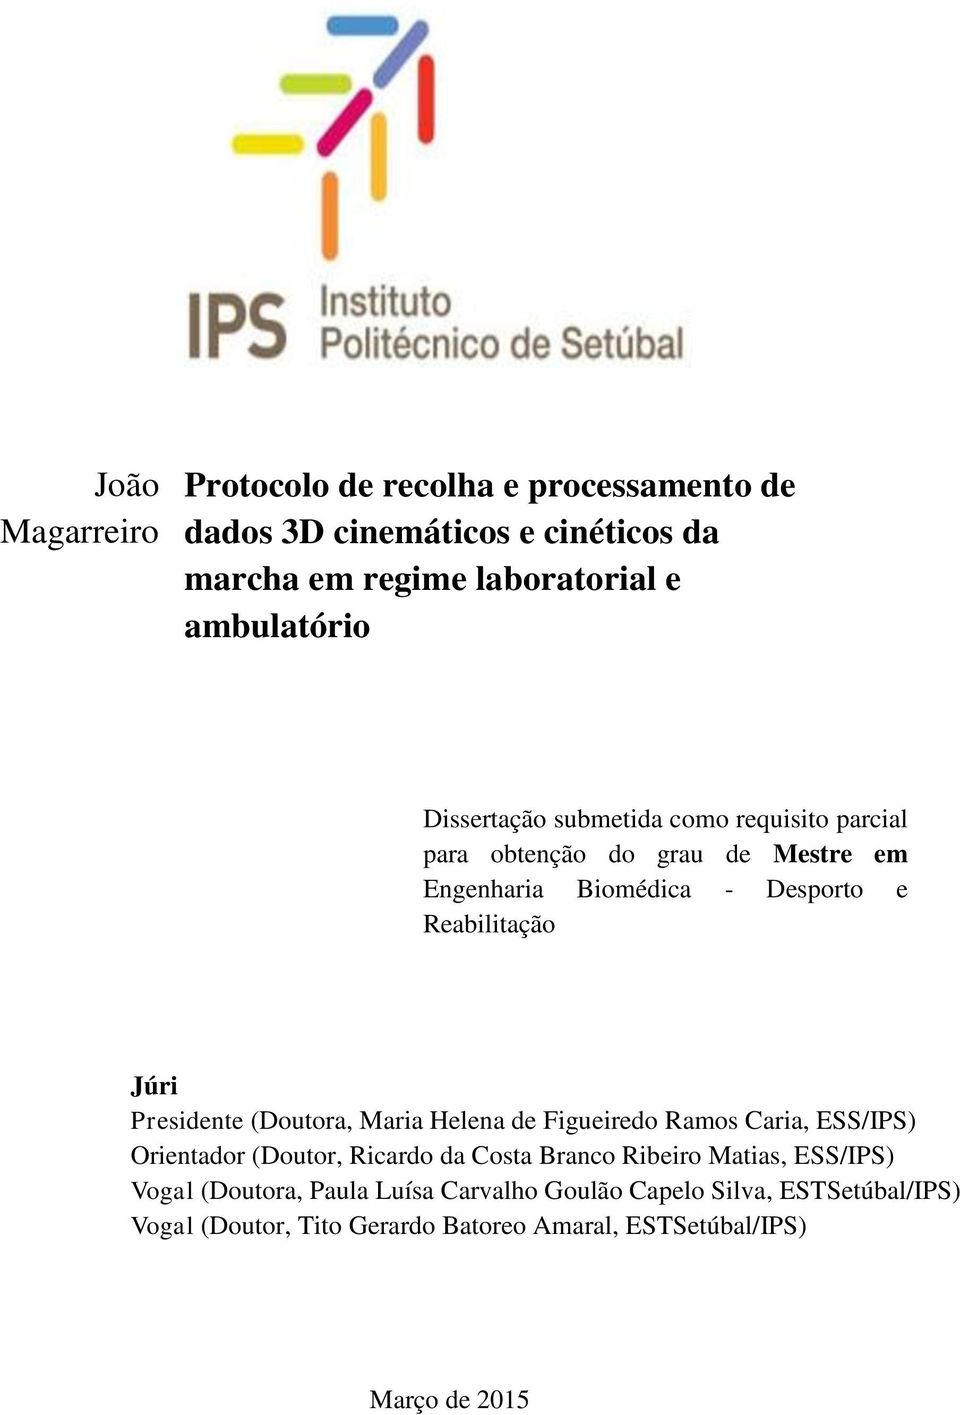 Presidente (Doutora, Maria Helena de Figueiredo Ramos Caria, ESS/IPS) Orientador (Doutor, Ricardo da Costa Branco Ribeiro Matias, ESS/IPS)